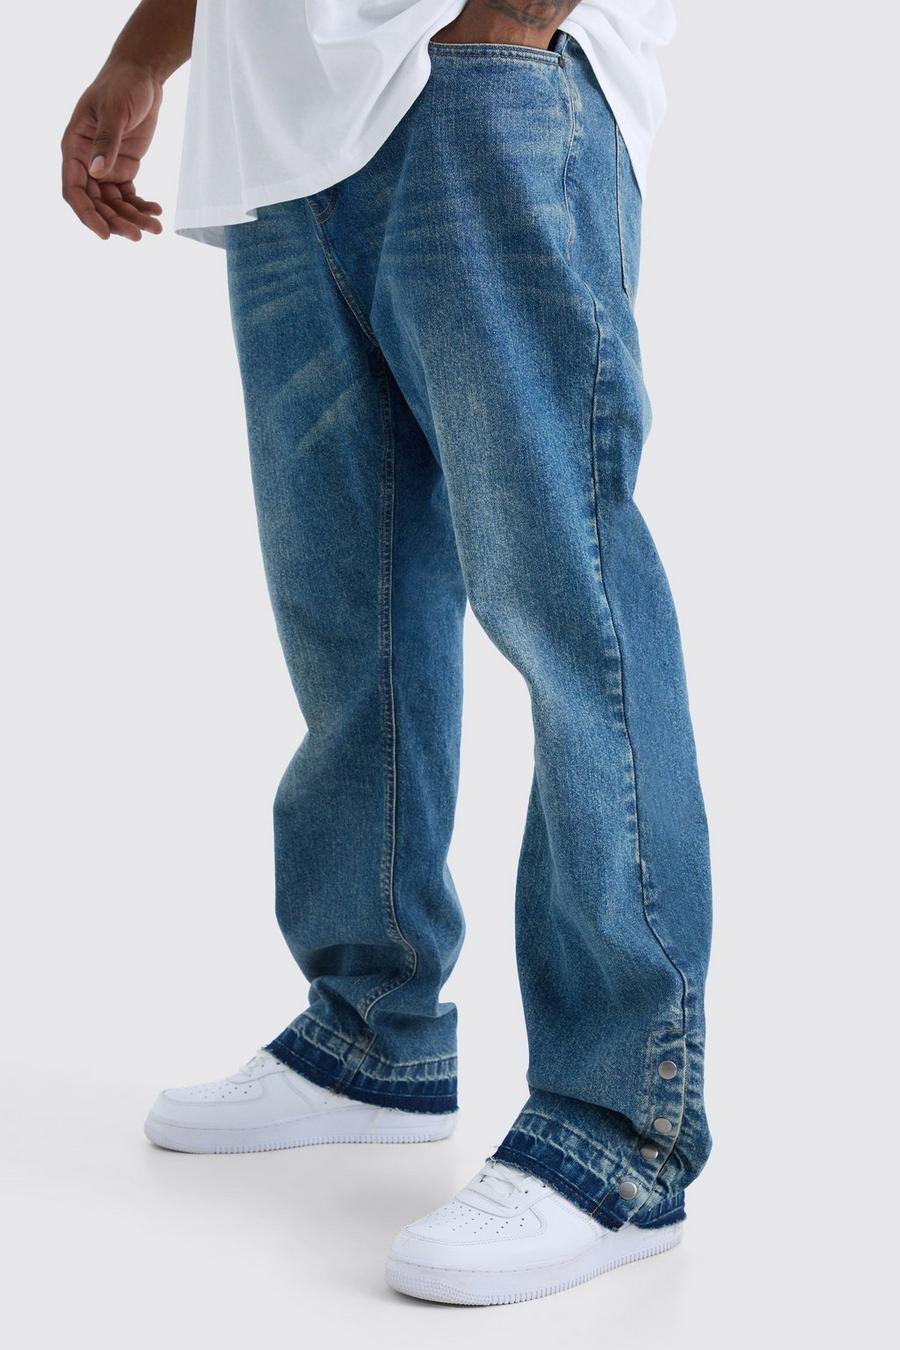 Jeans Plus Size Slim Fit in denim rigido a zampa con bottoni a pressione sul fondo, Antique blue